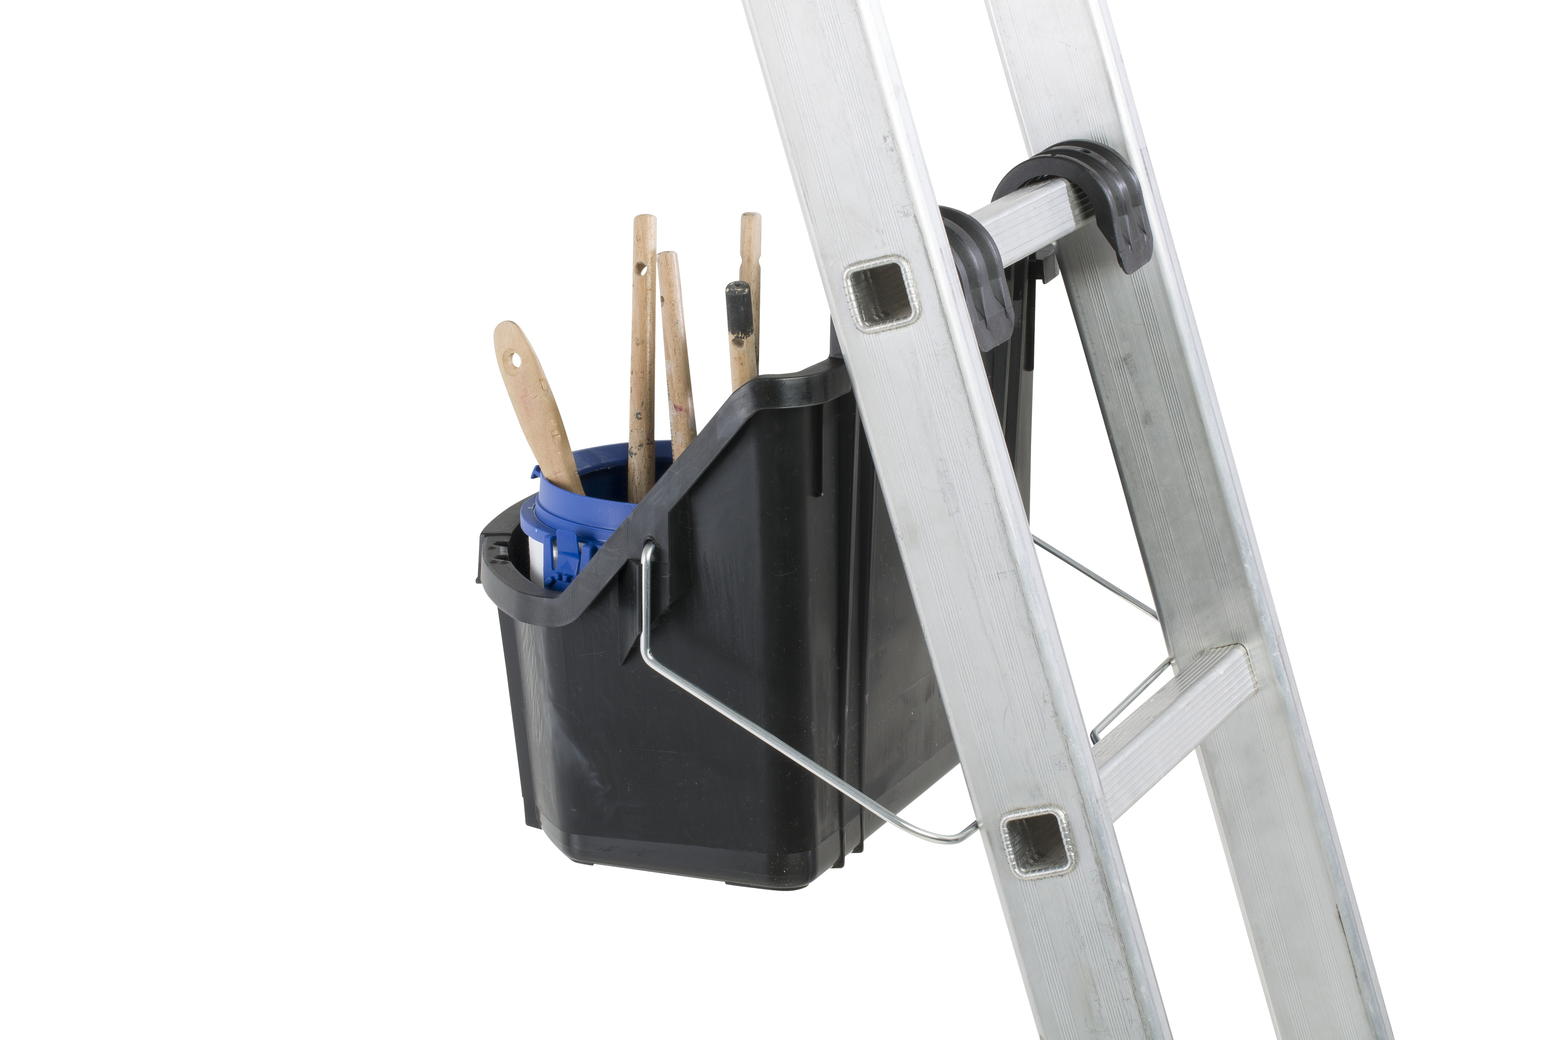 Met het hengsel naar achteren hangt de ToolTray recht en stabiel aan een ladder